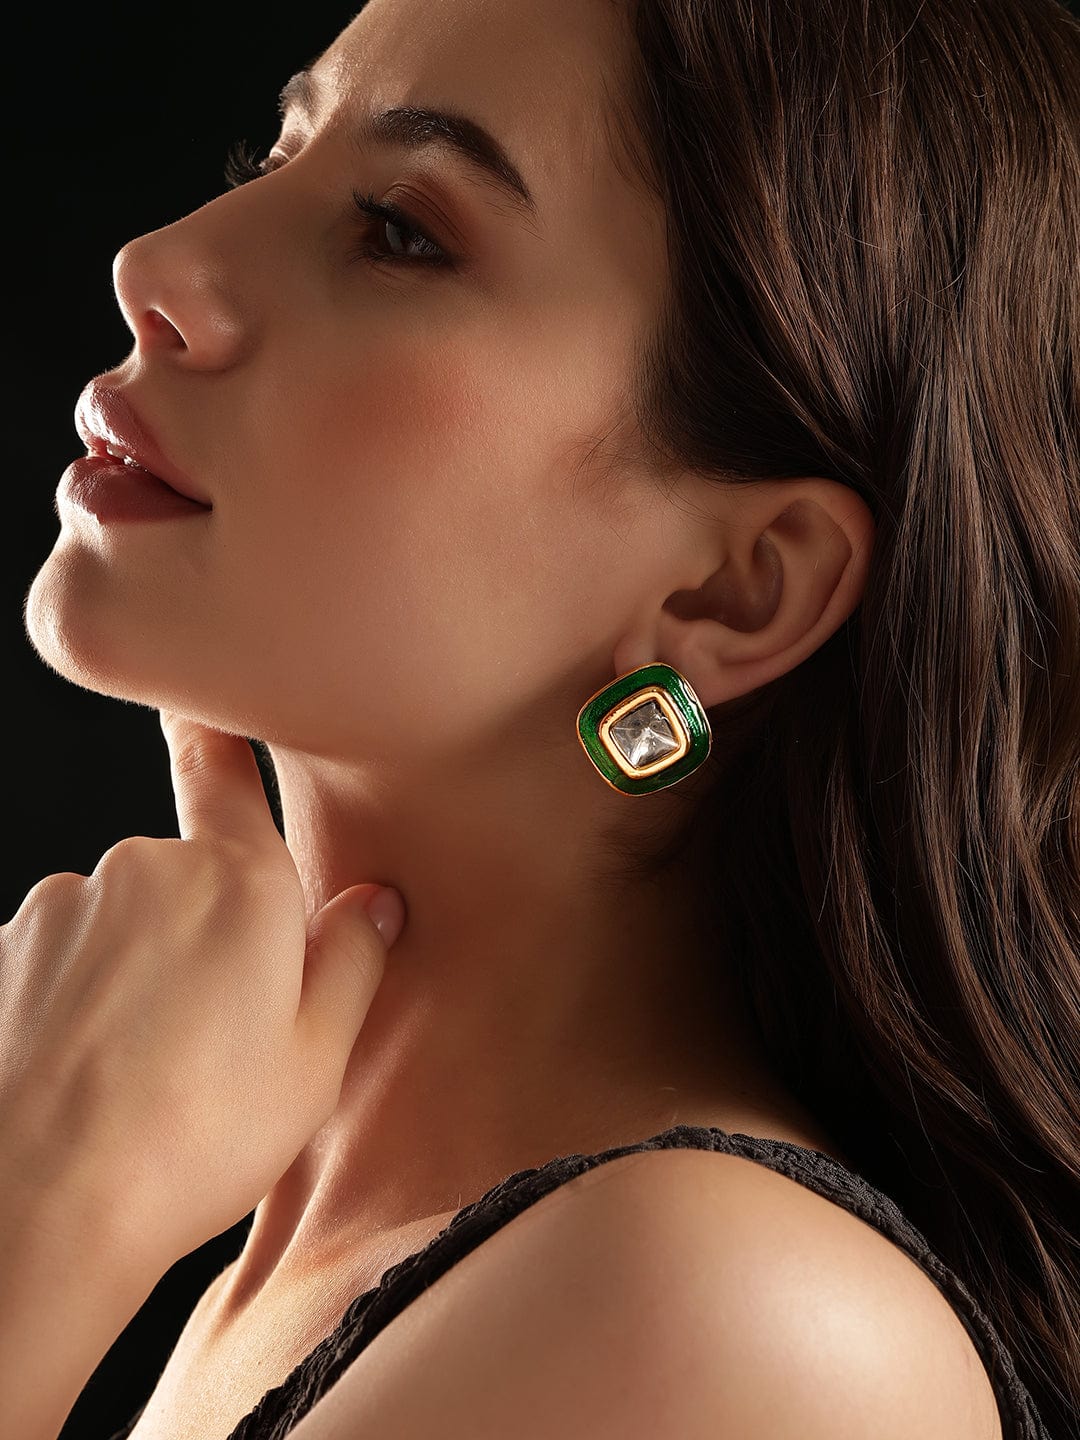 Rubans 22K Antique Gold Crystal Studded Green Enamel Stud Earrings Earrings